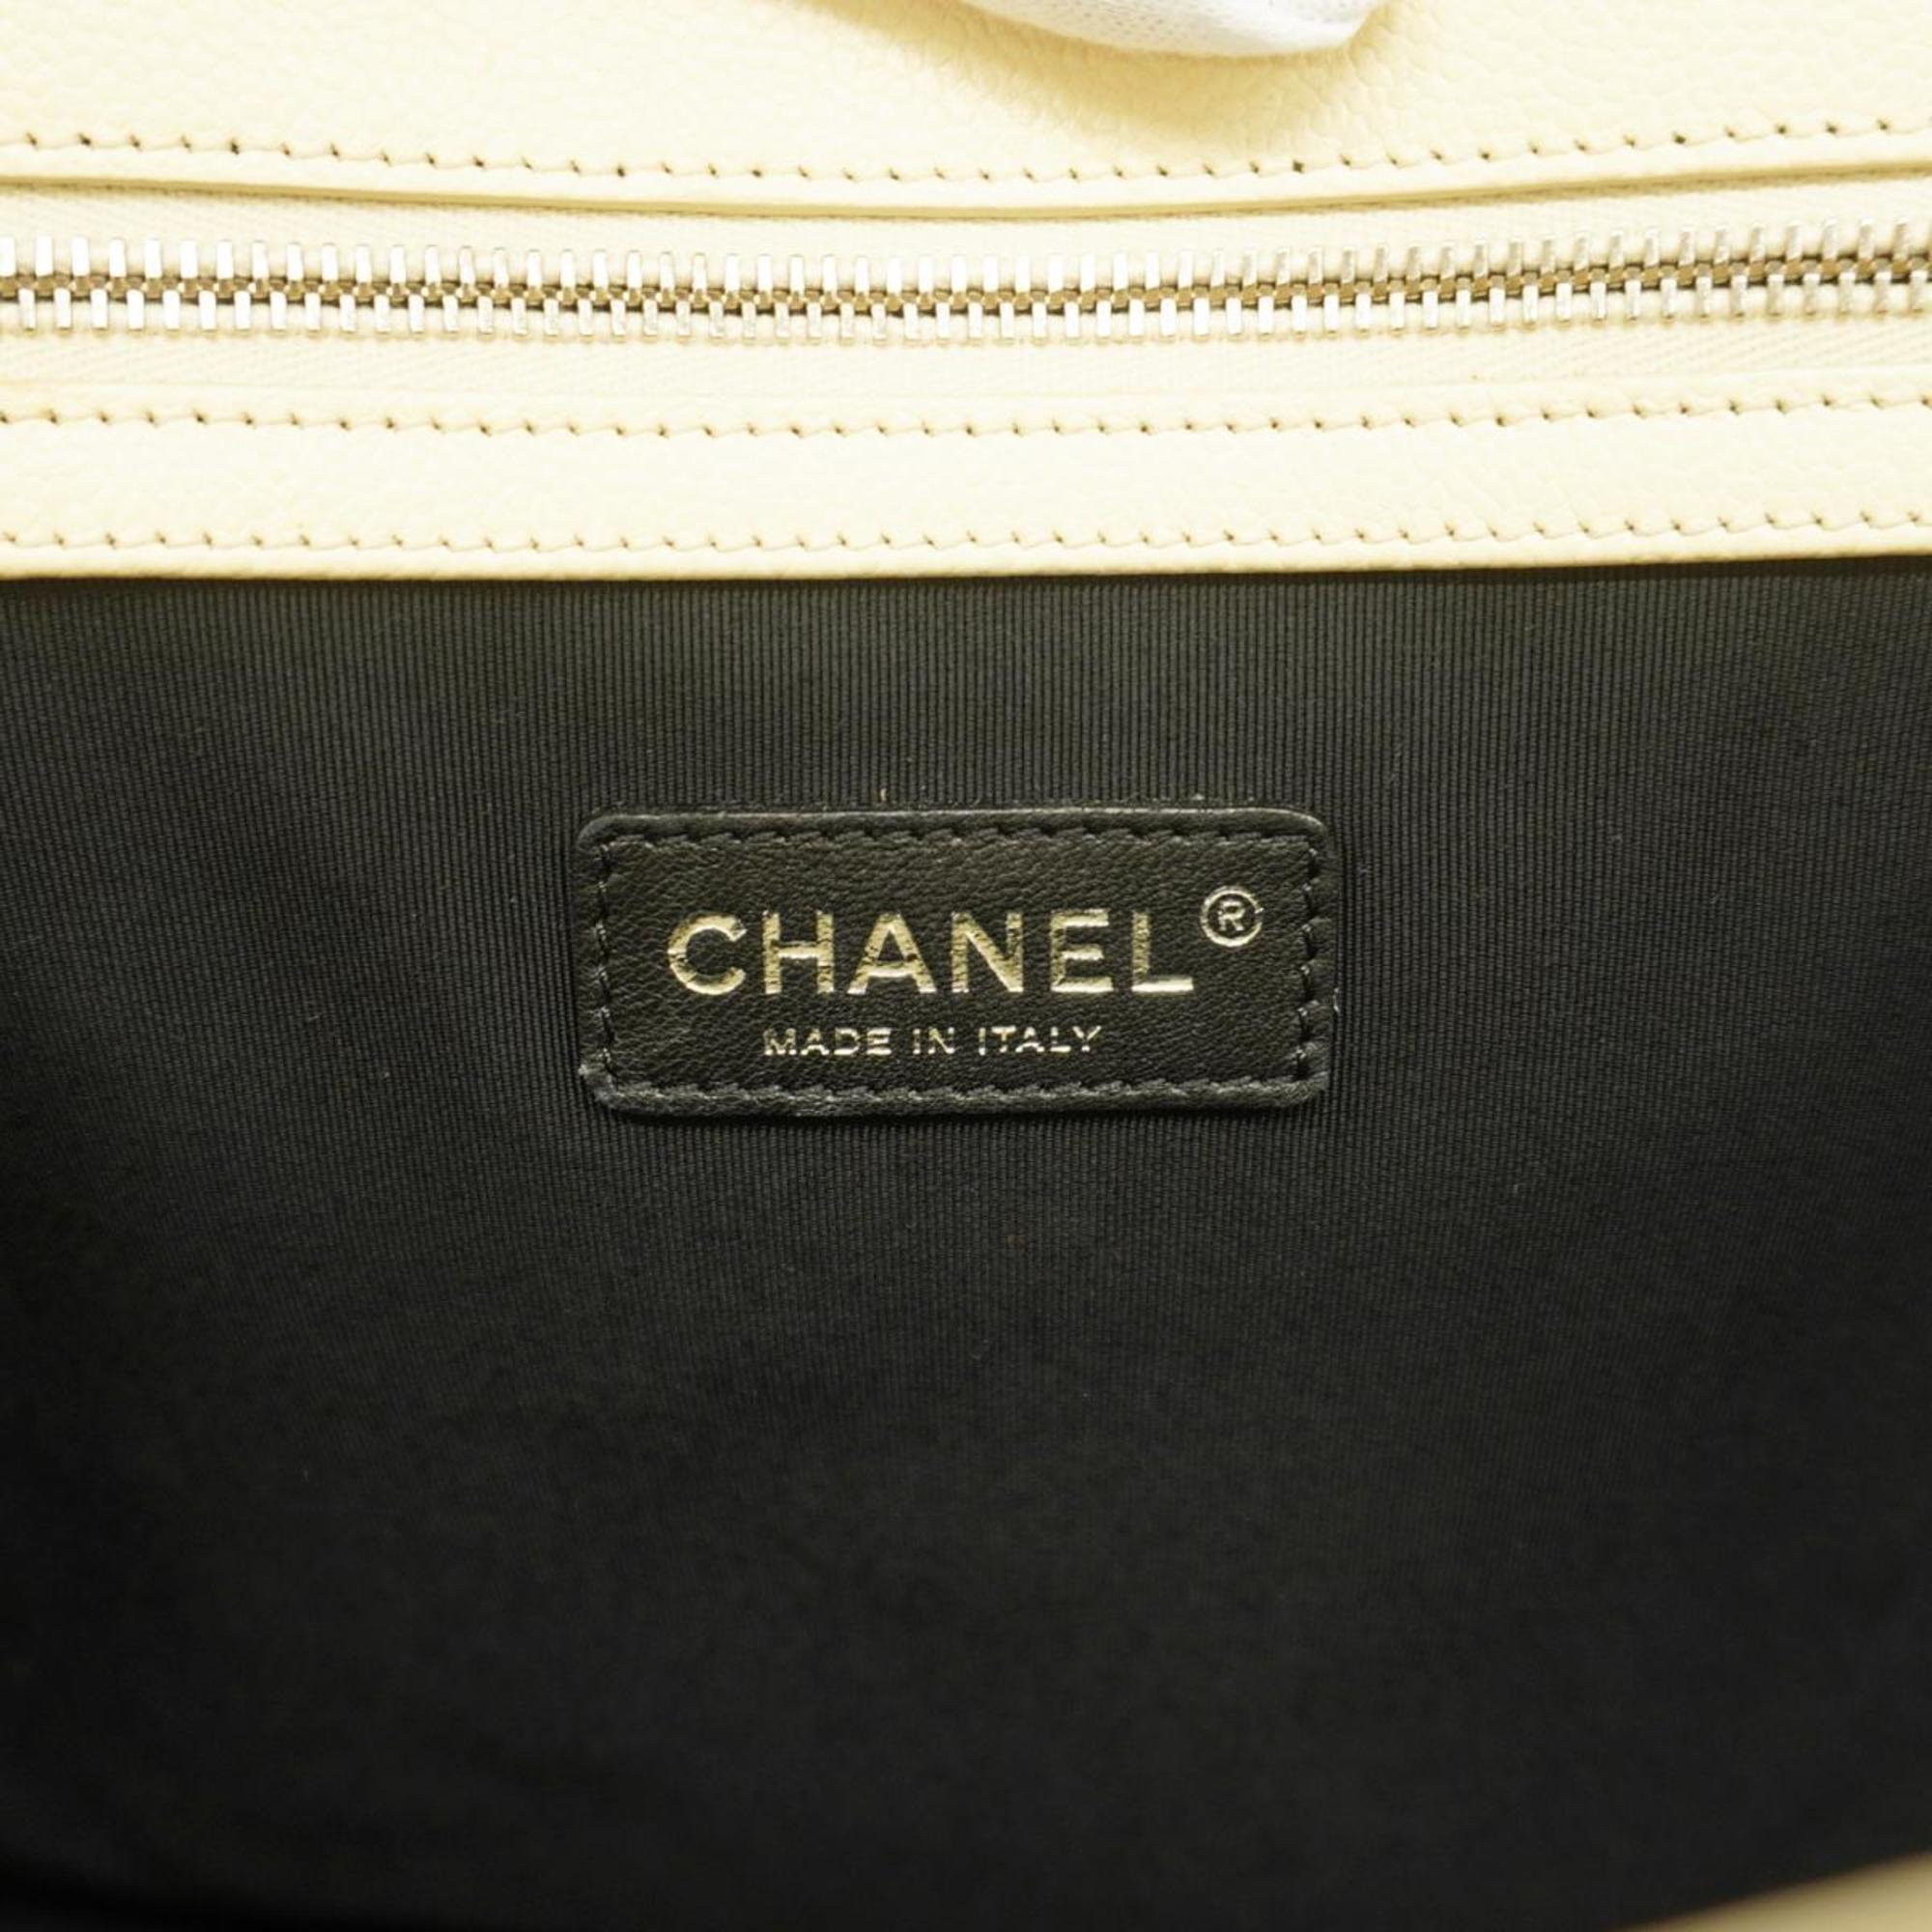 シャネル(Chanel) シャネル ハンドバッグ マトラッセ チェーンショルダー キャビアスキン ホワイト グレー   レディース